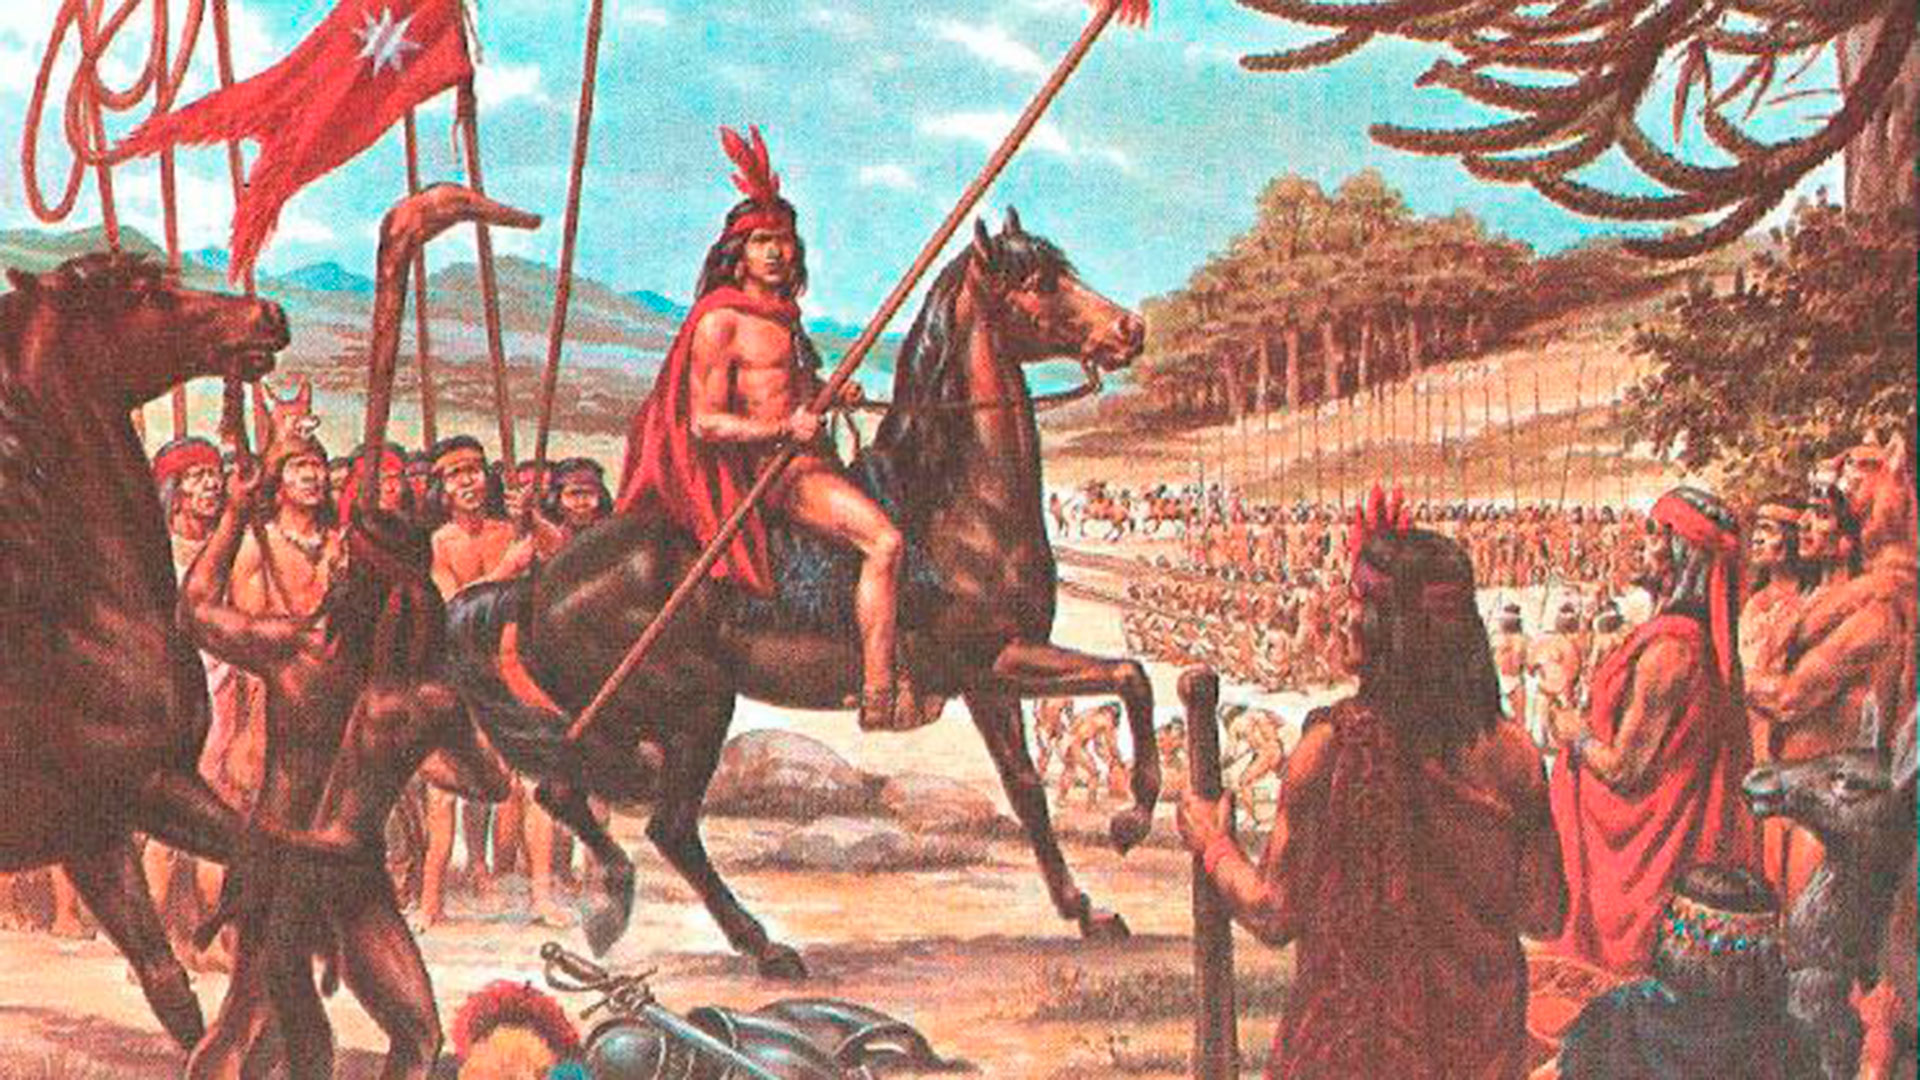 El 25 de diciembre de 1553, Leftraru lideró el primer levantamiento contra los conquistadores españoles. Ese día Pedro de Valdivia fue llevado al centro del campo mapuche, y ejecutado por el mismo guerrero mapuche